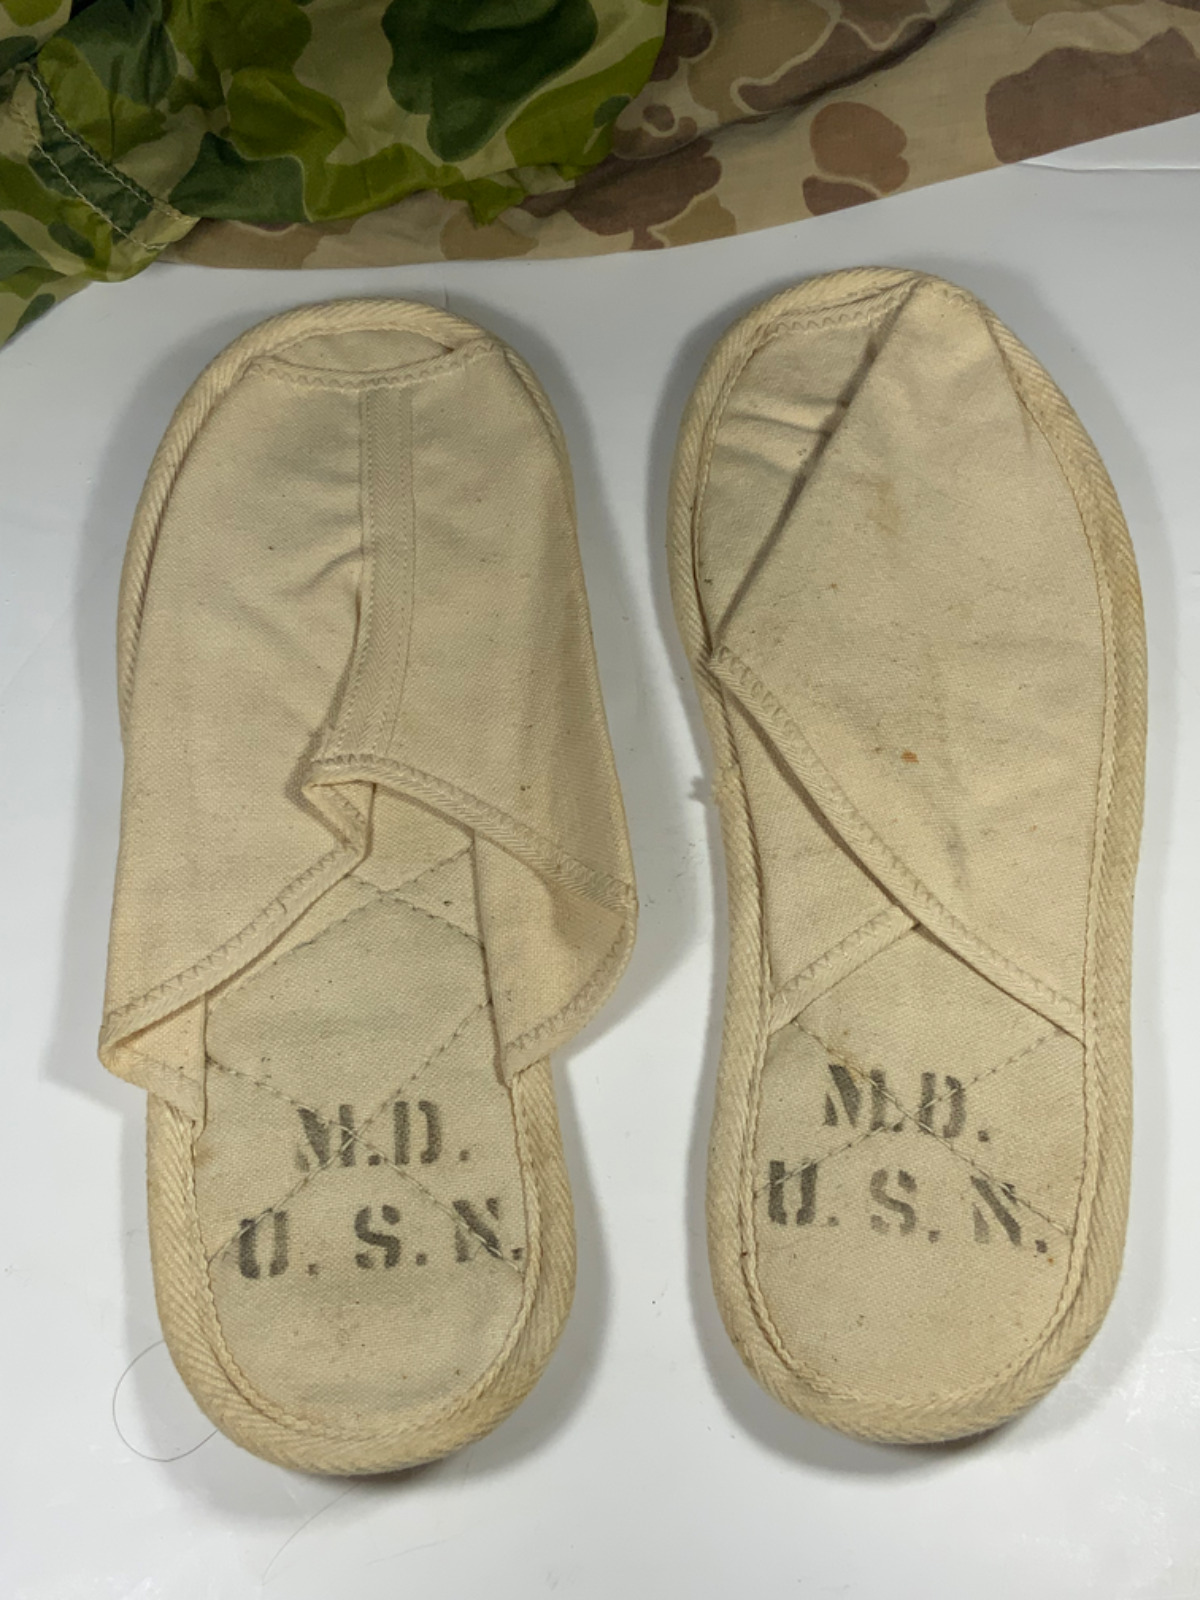 WW2 USN Medical Dept. Patient Slippers NOS